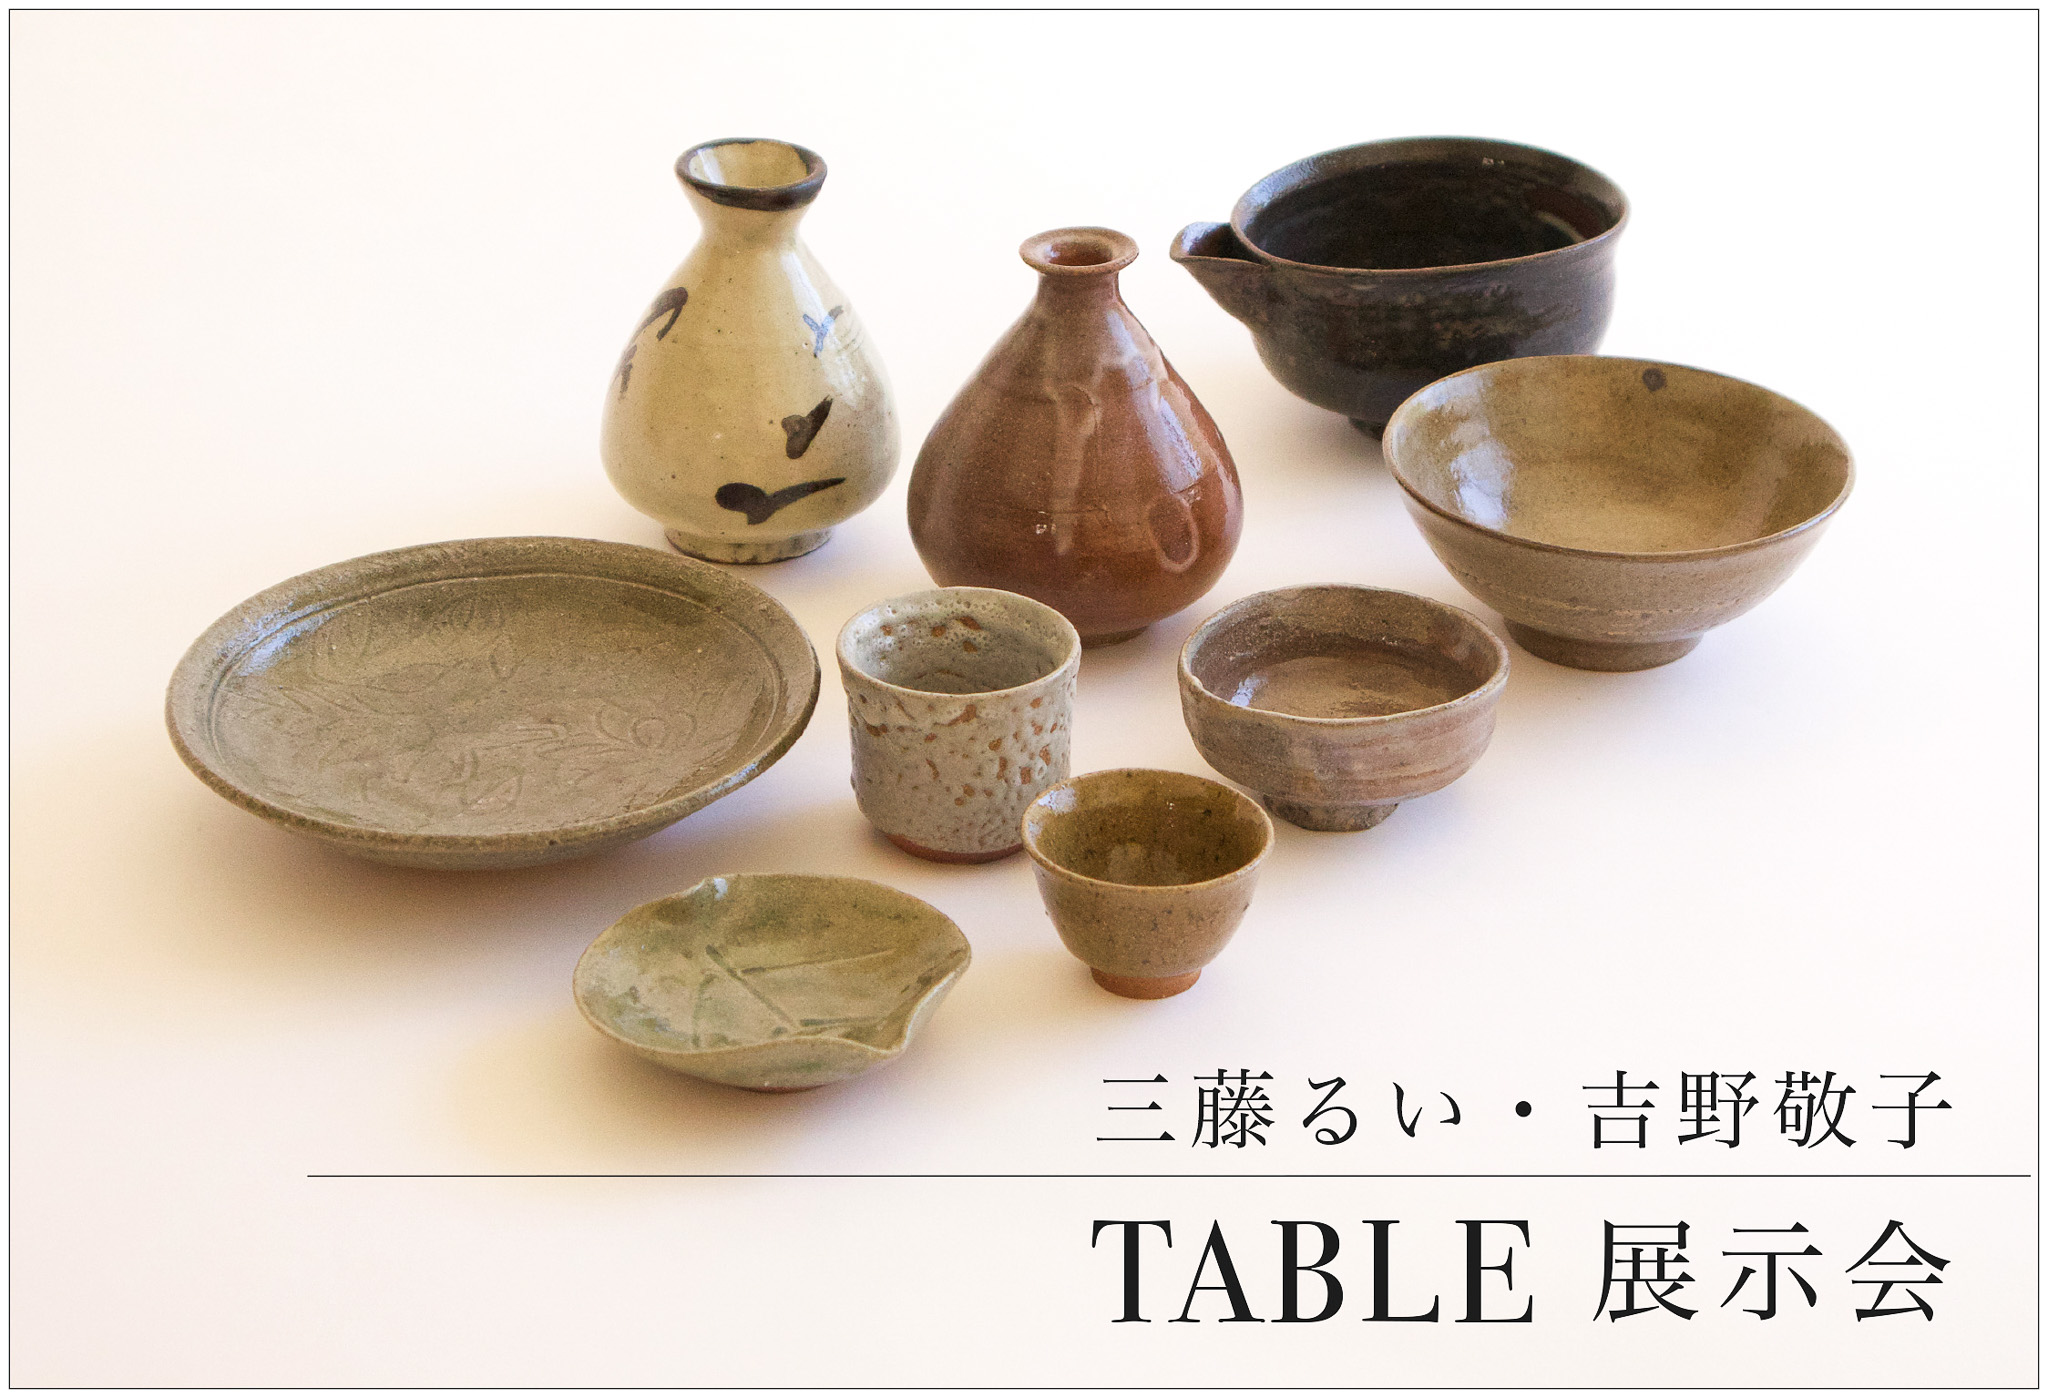 『三藤るい・吉野敬子 TABLE展示会』のお知らせ